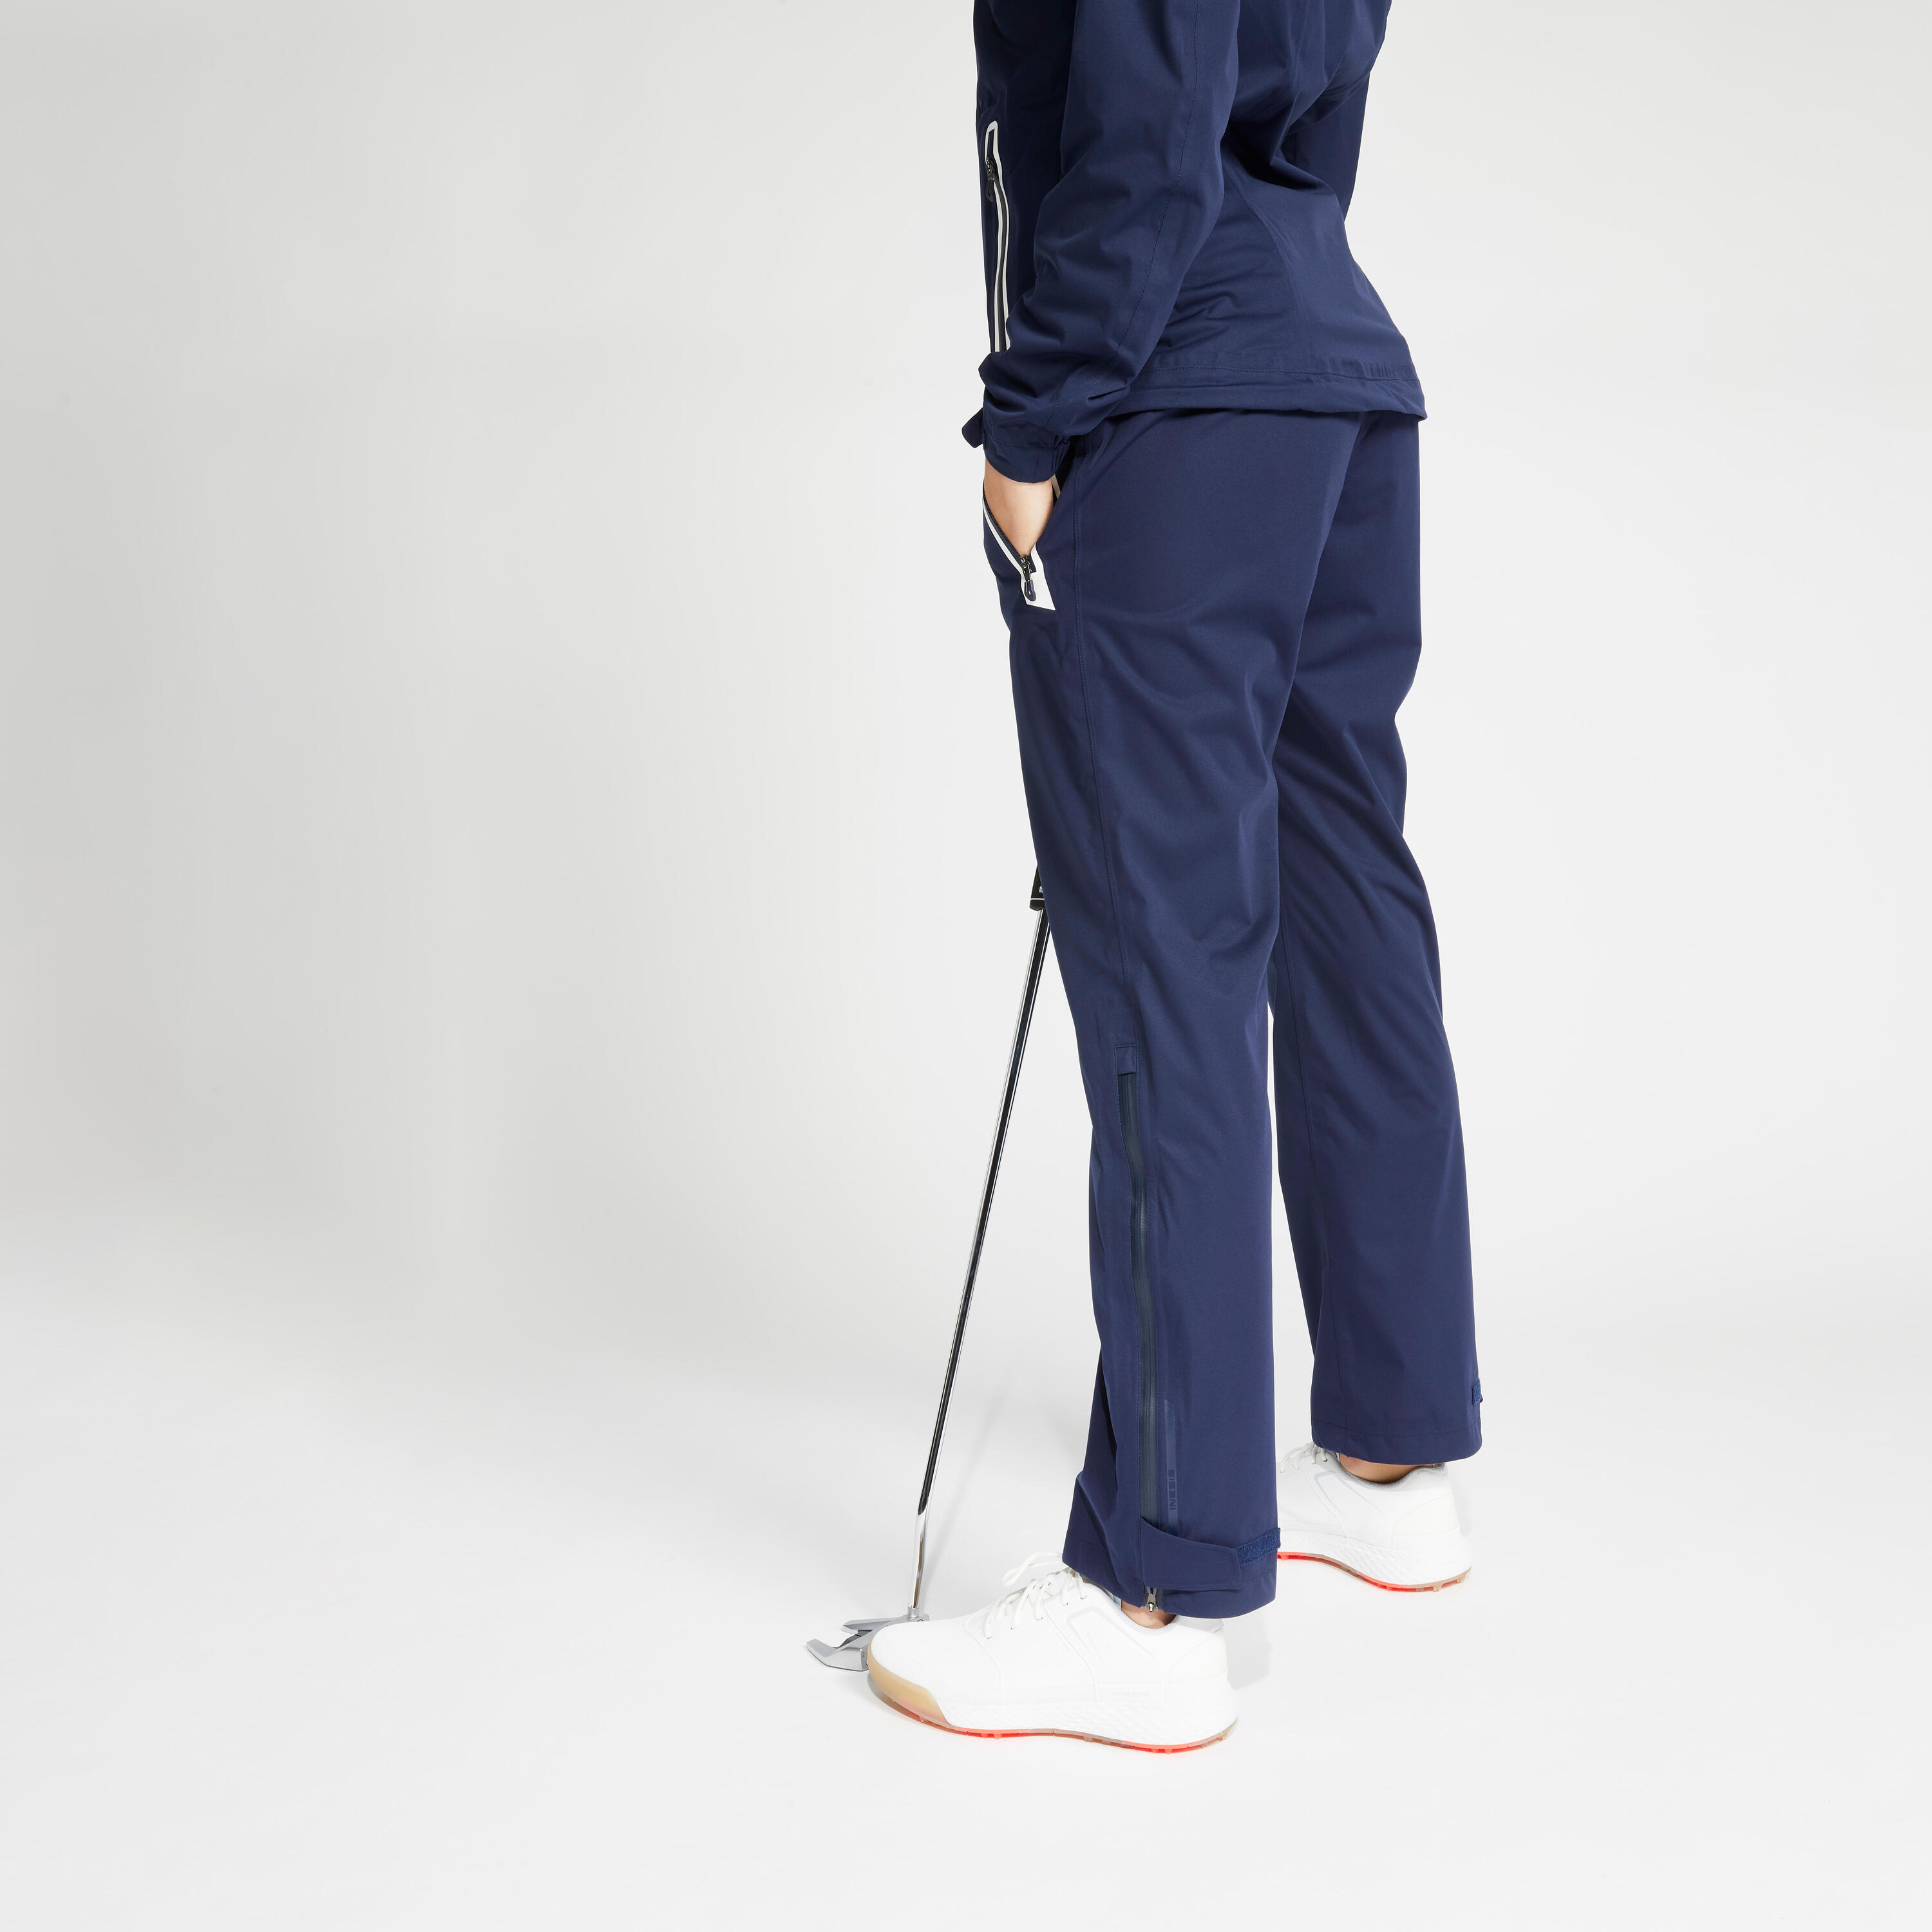 Women’s golf waterproof trousers - RW500 navy blue 2/7